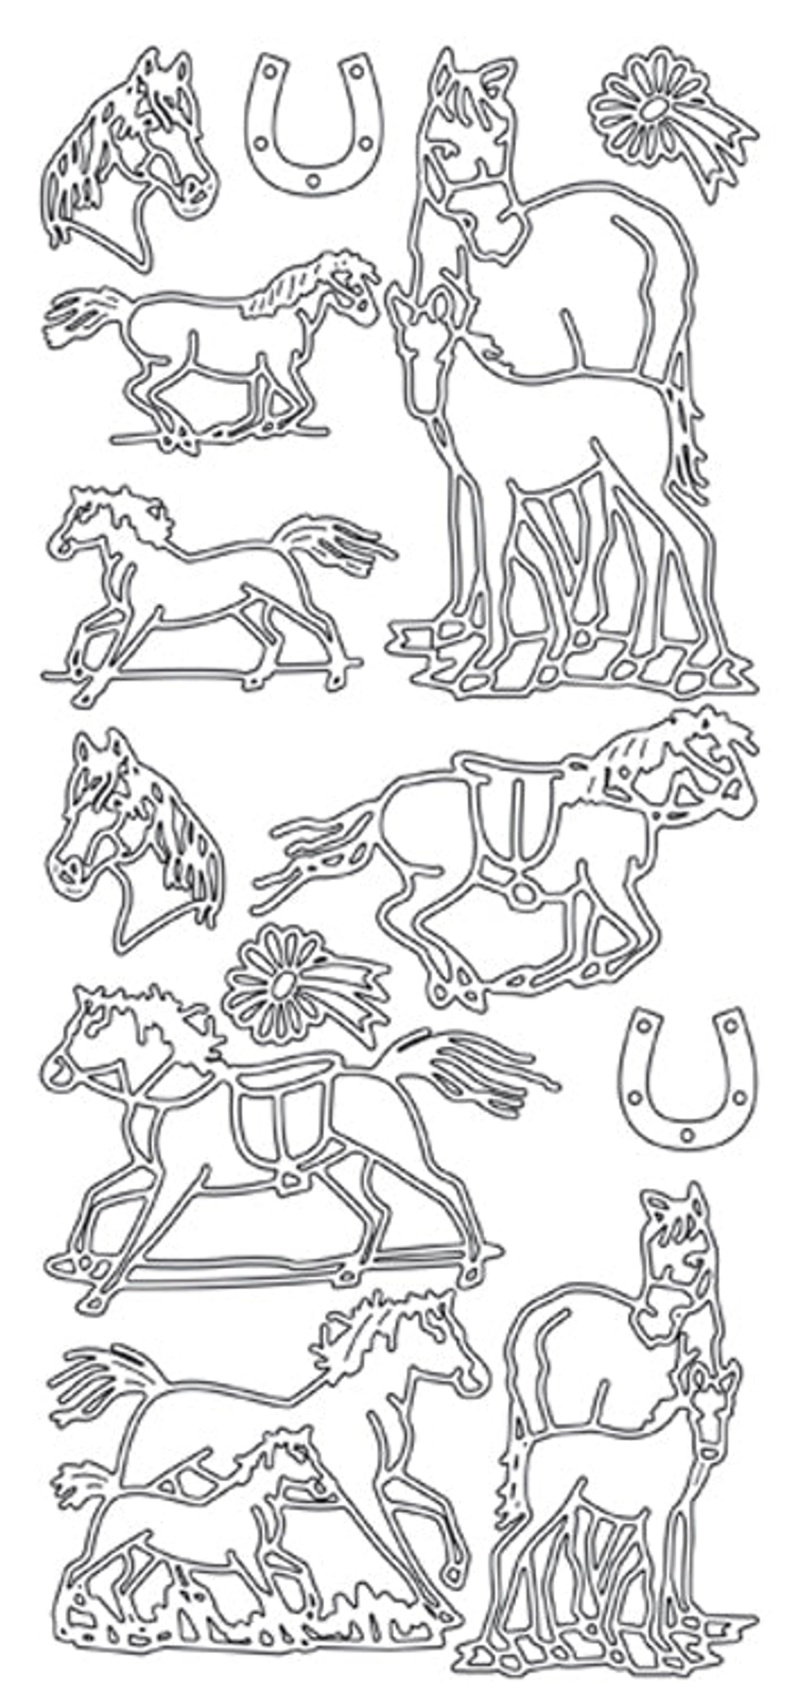 Peel-Off Stickers - Horses